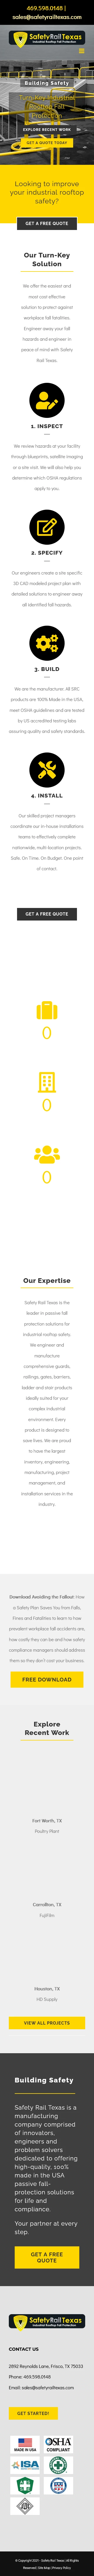 Safety Rail Texas - Mobile